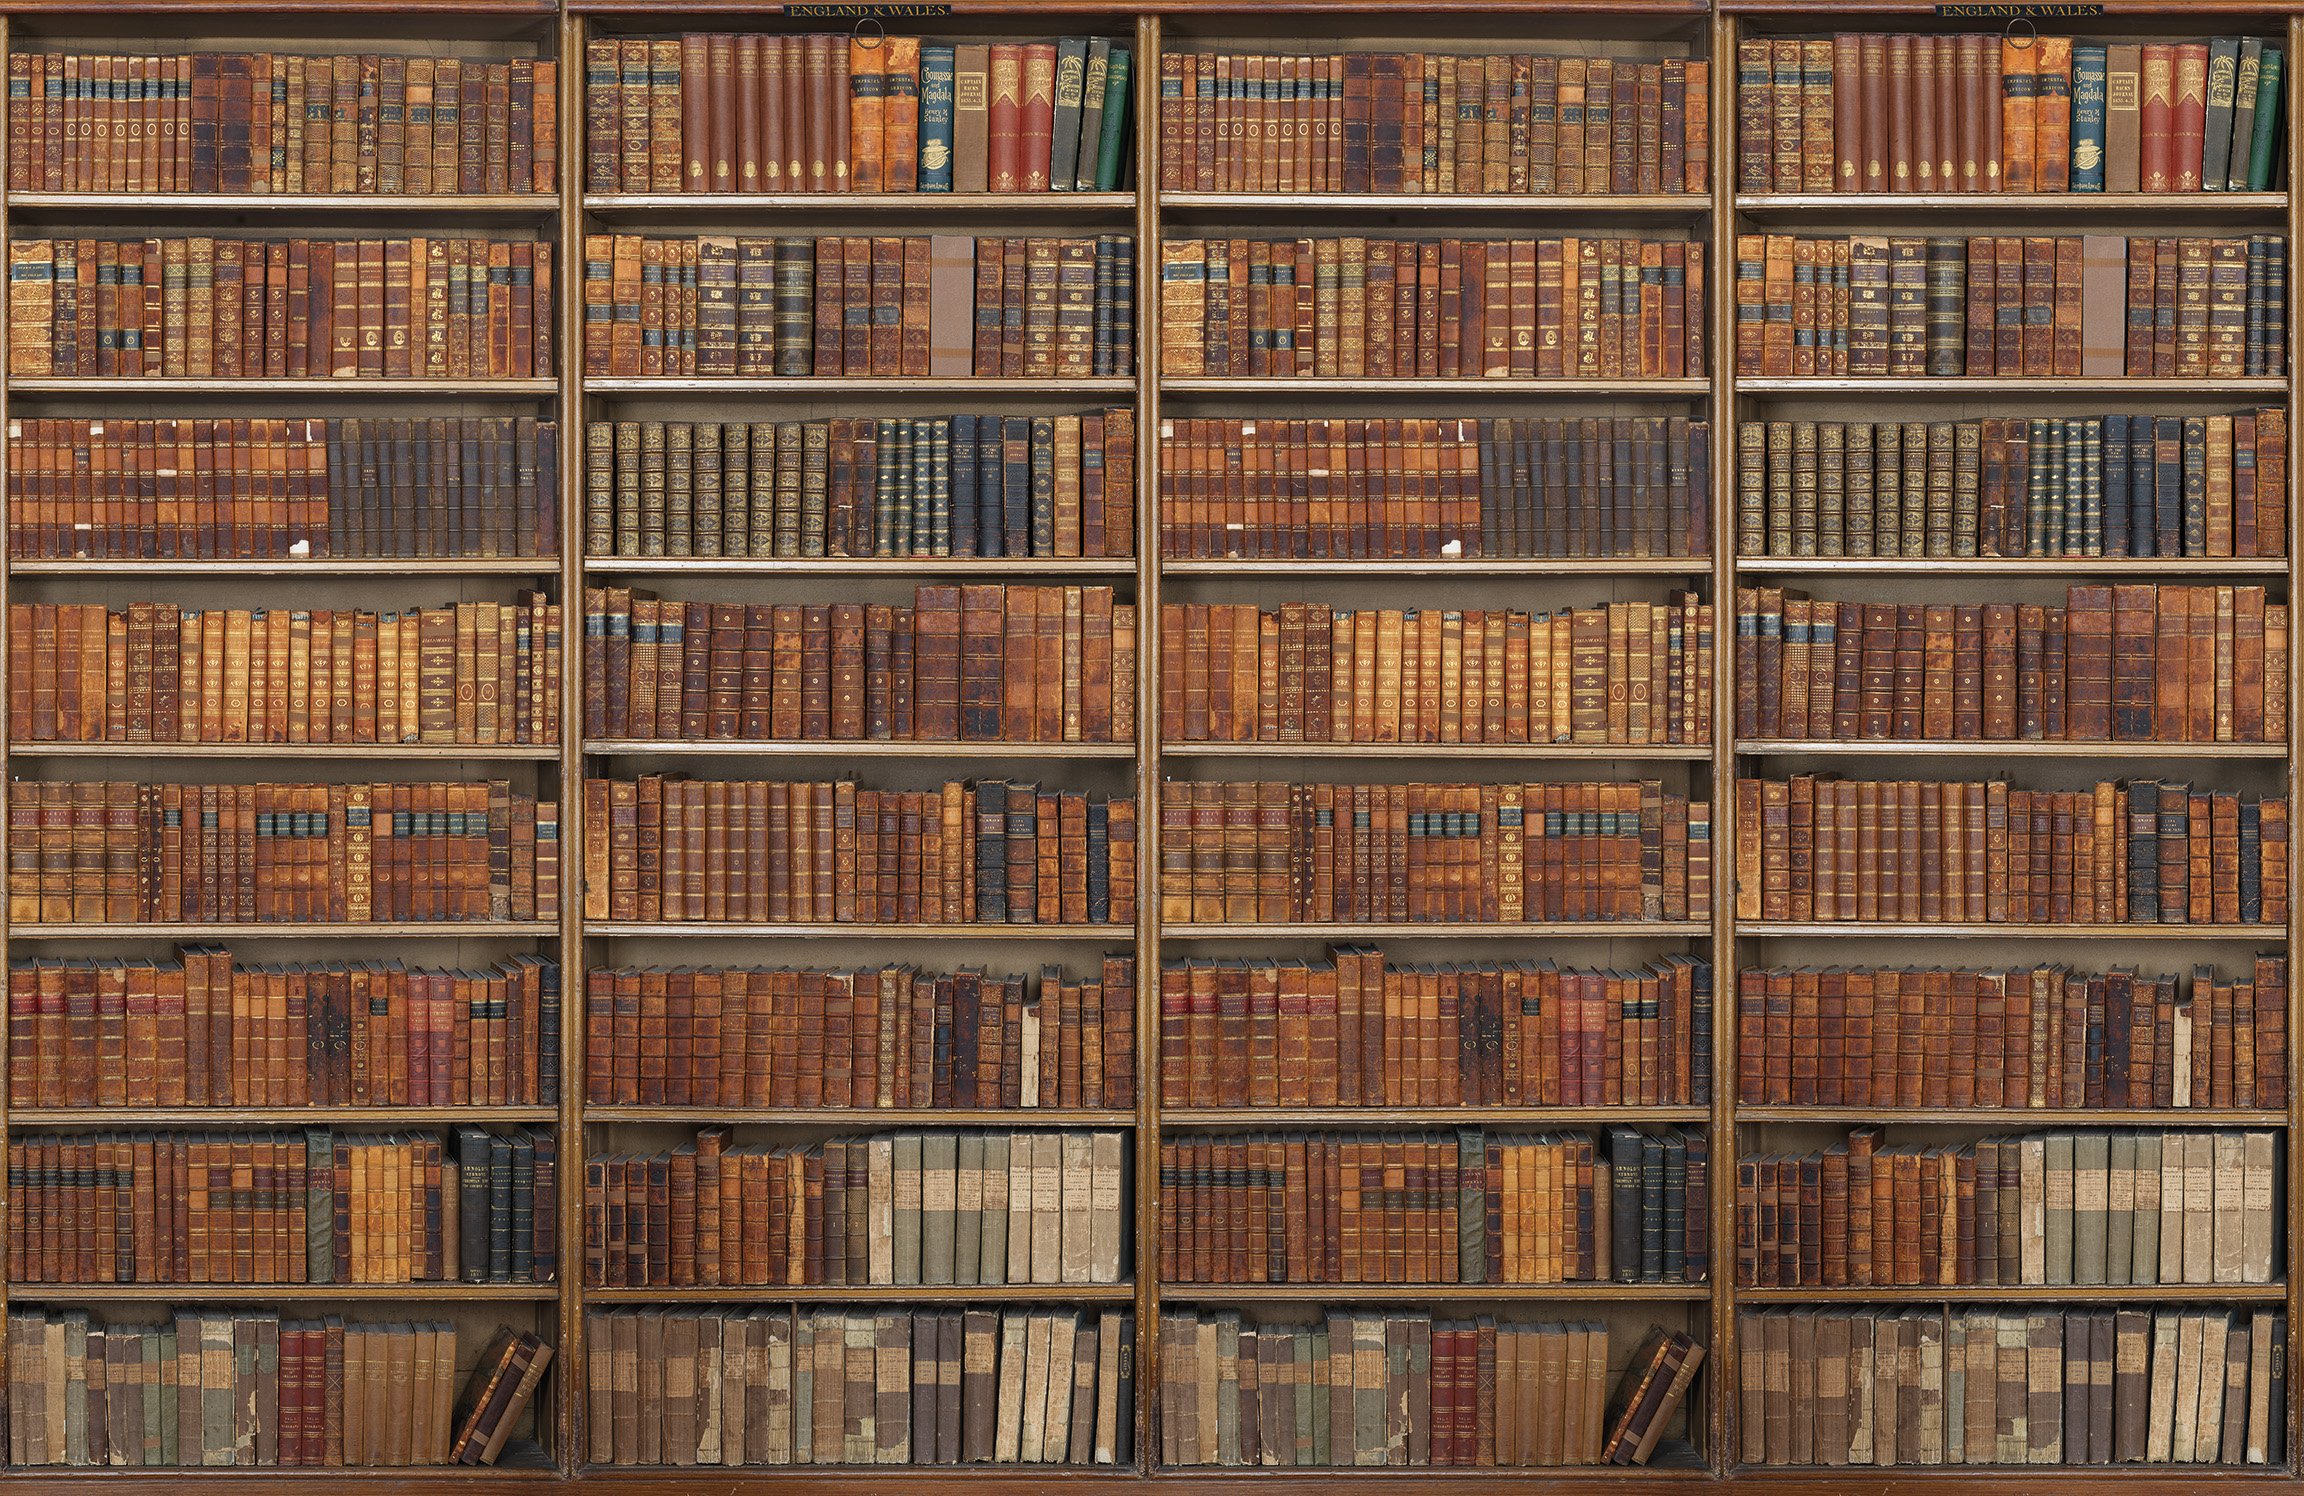 Compiled library. Старинный шкаф с книгами. Старинный стеллаж с книгами. Старинные книжные полки. Текстура шкафа с книгами.